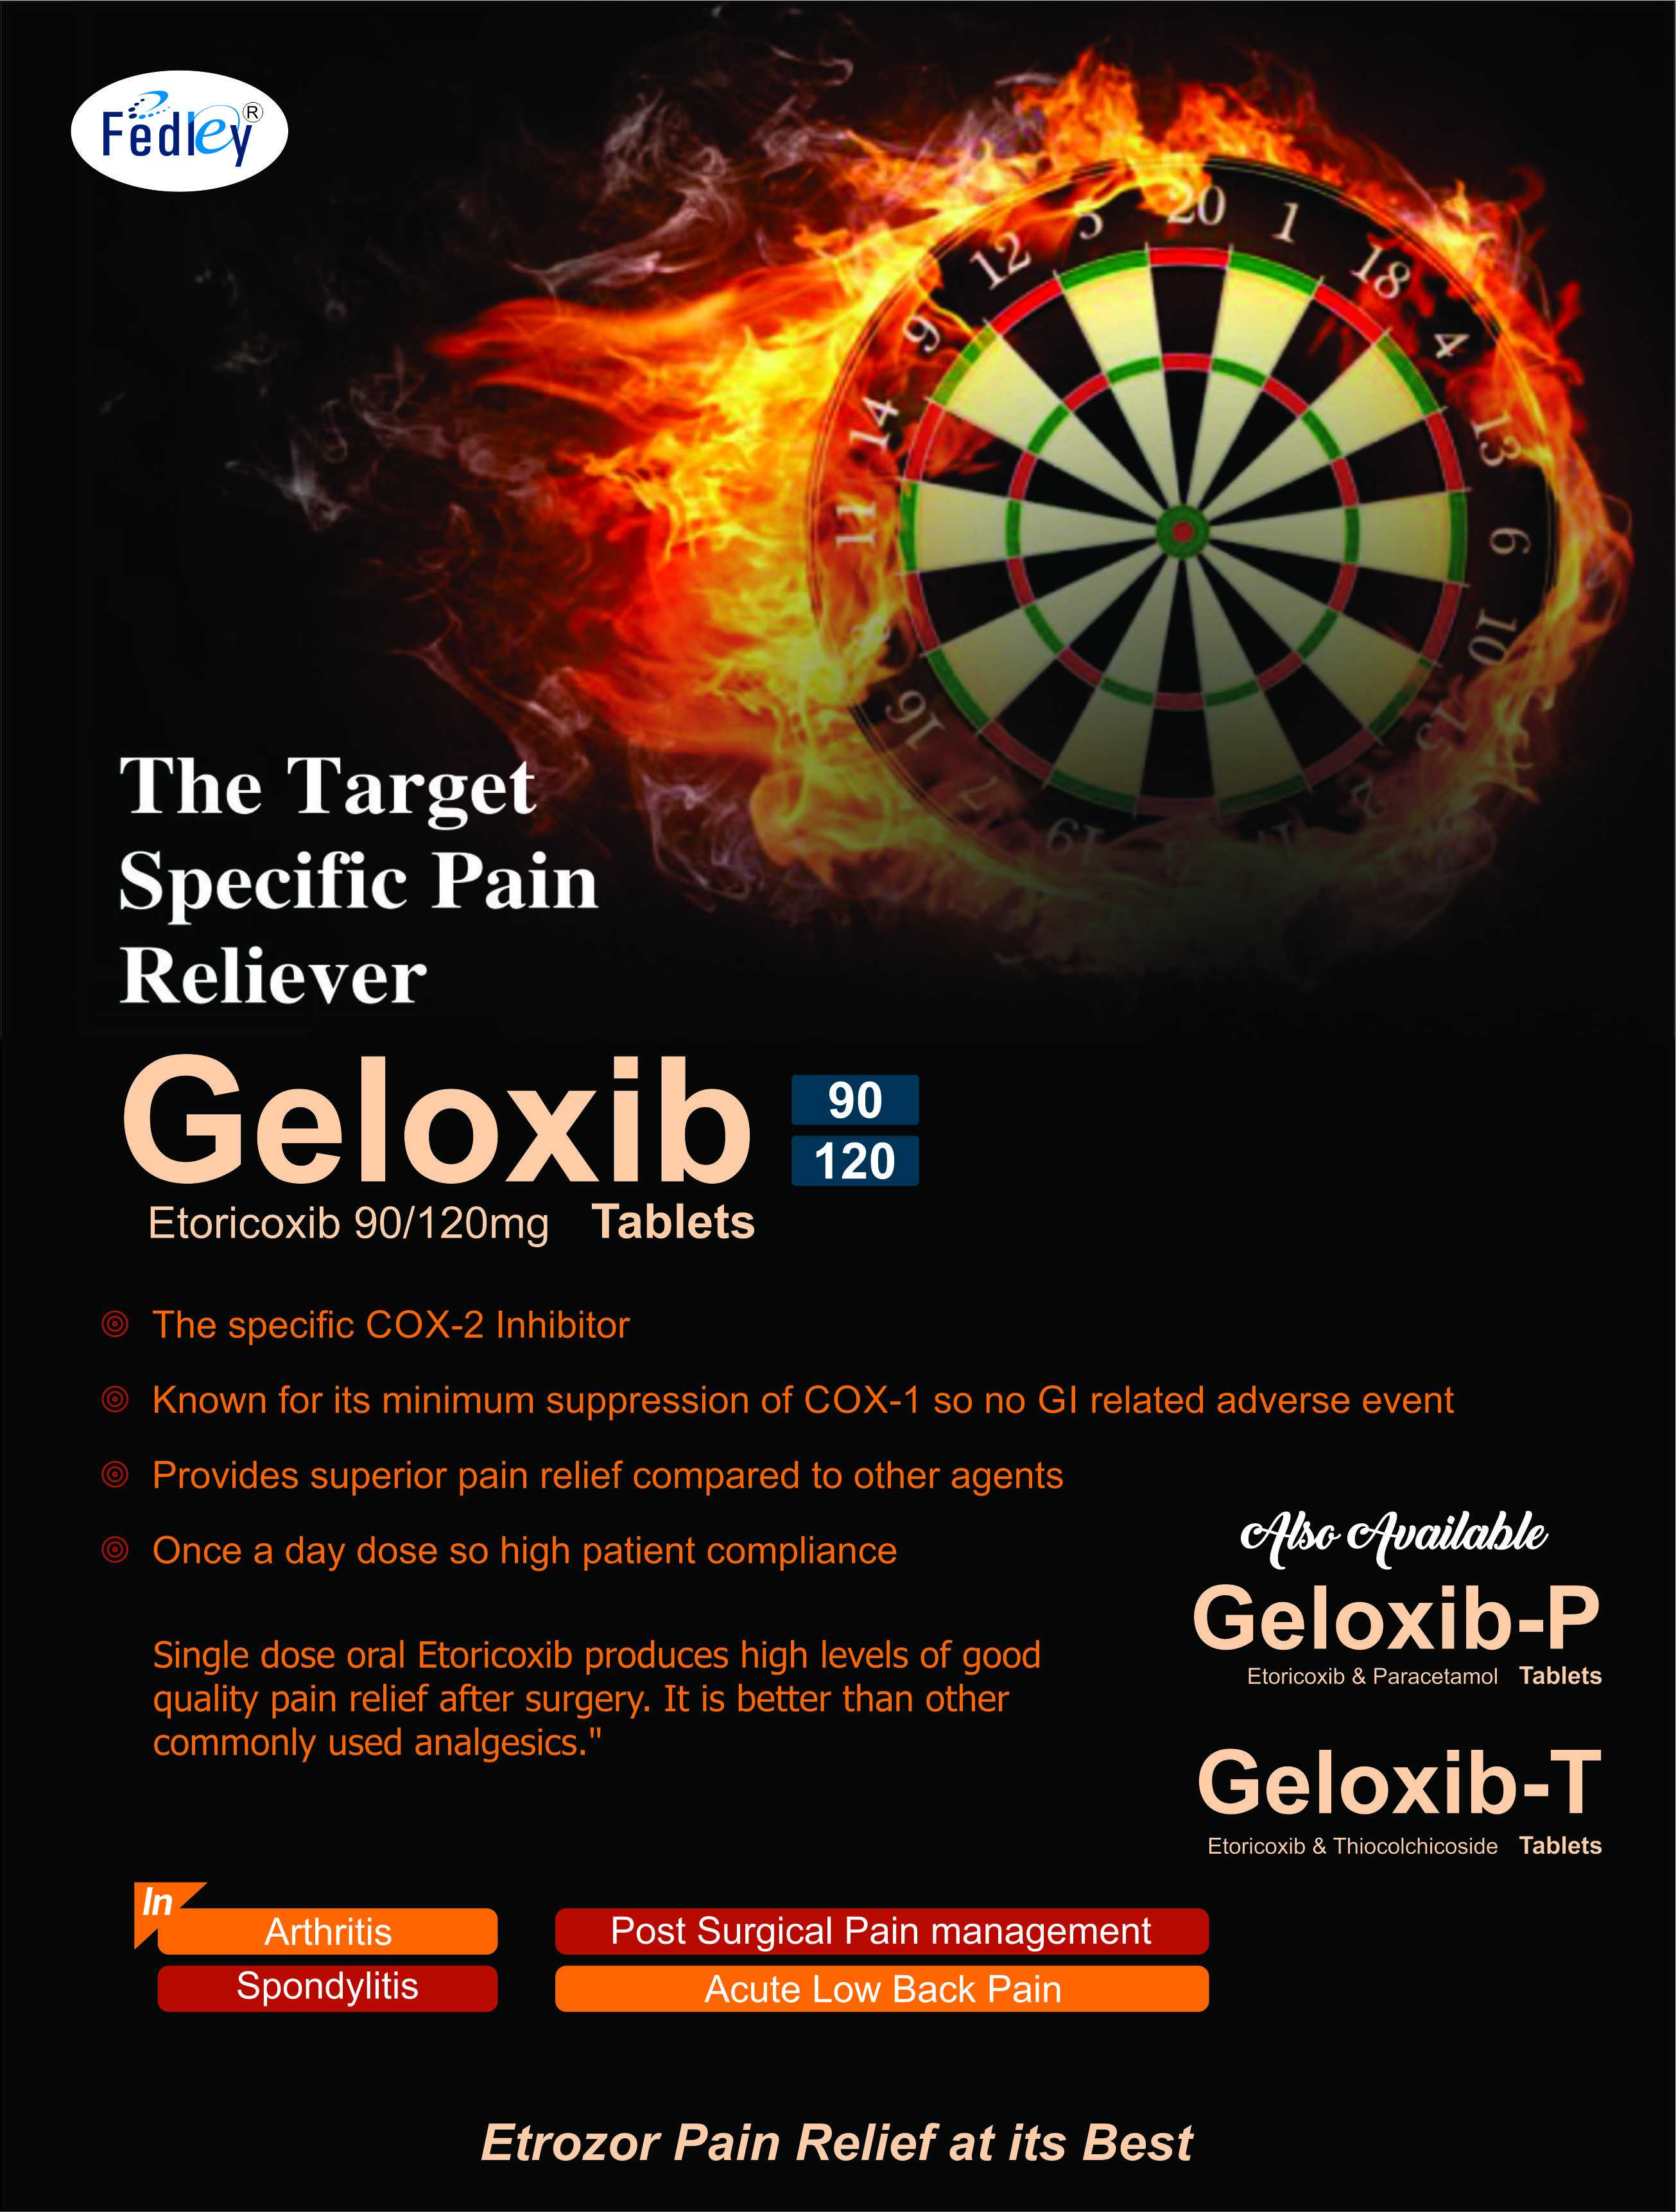 GELOXIB-T